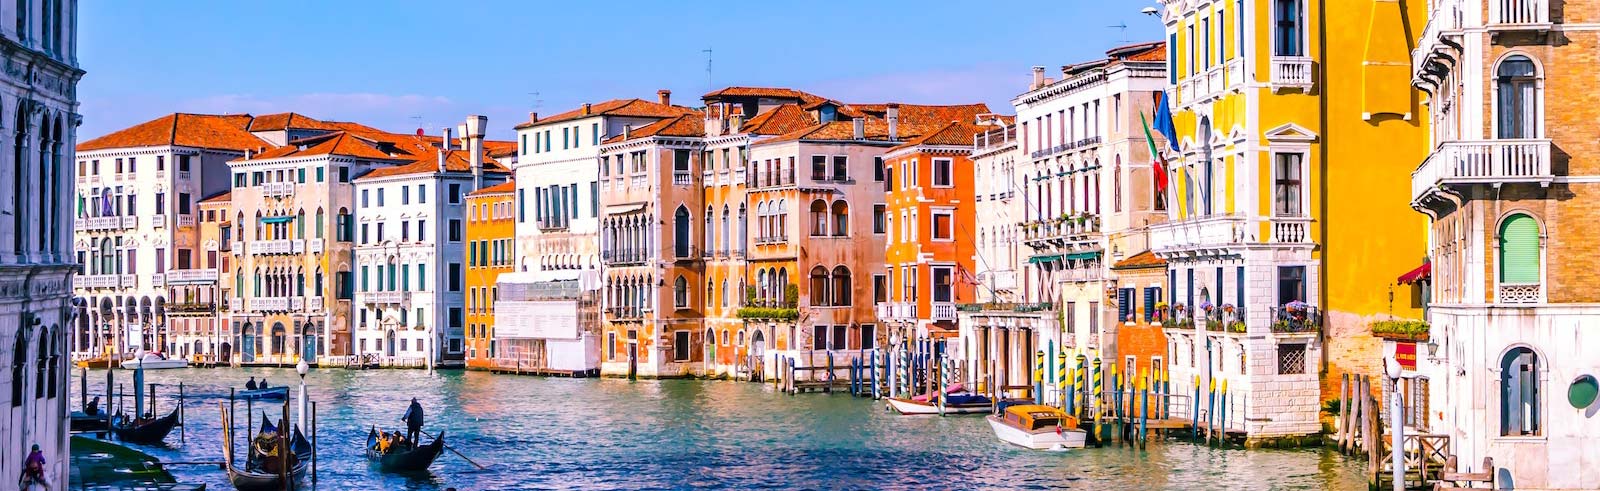 Terusan Venice Itali dengan bangunan berwarna-warni